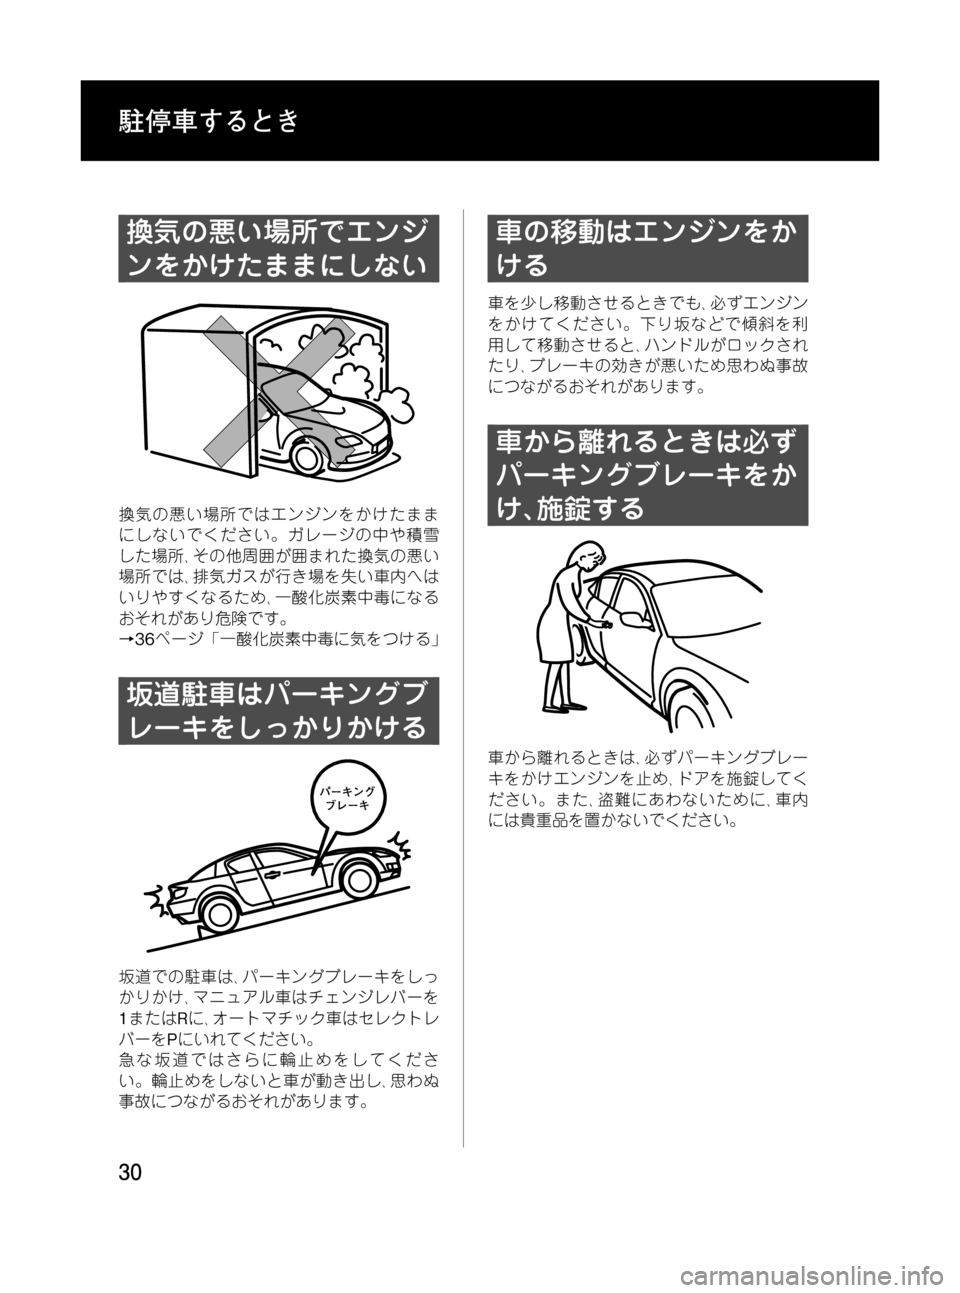 MAZDA MODEL RX 8 2008  取扱説明書 (in Japanese) Black plate (30,1)
換気の悪い場所でエンジ
ンをかけたままにしない
換気の悪い場所ではエンジンをかけたまま
にしないでください。ガレージの中や積�